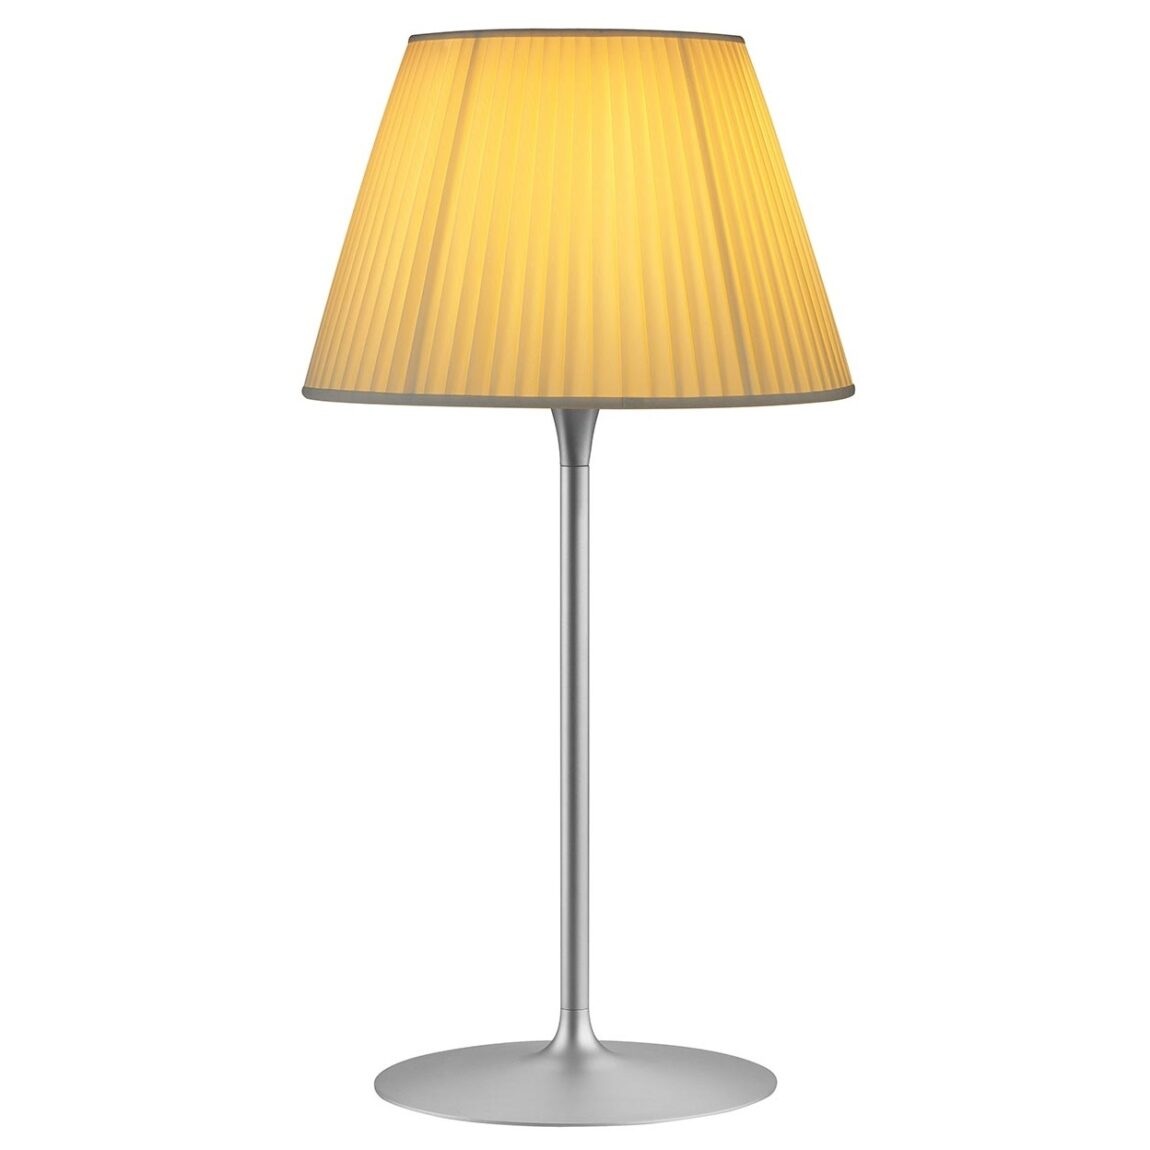 Flos designové stolní lampy Romeo